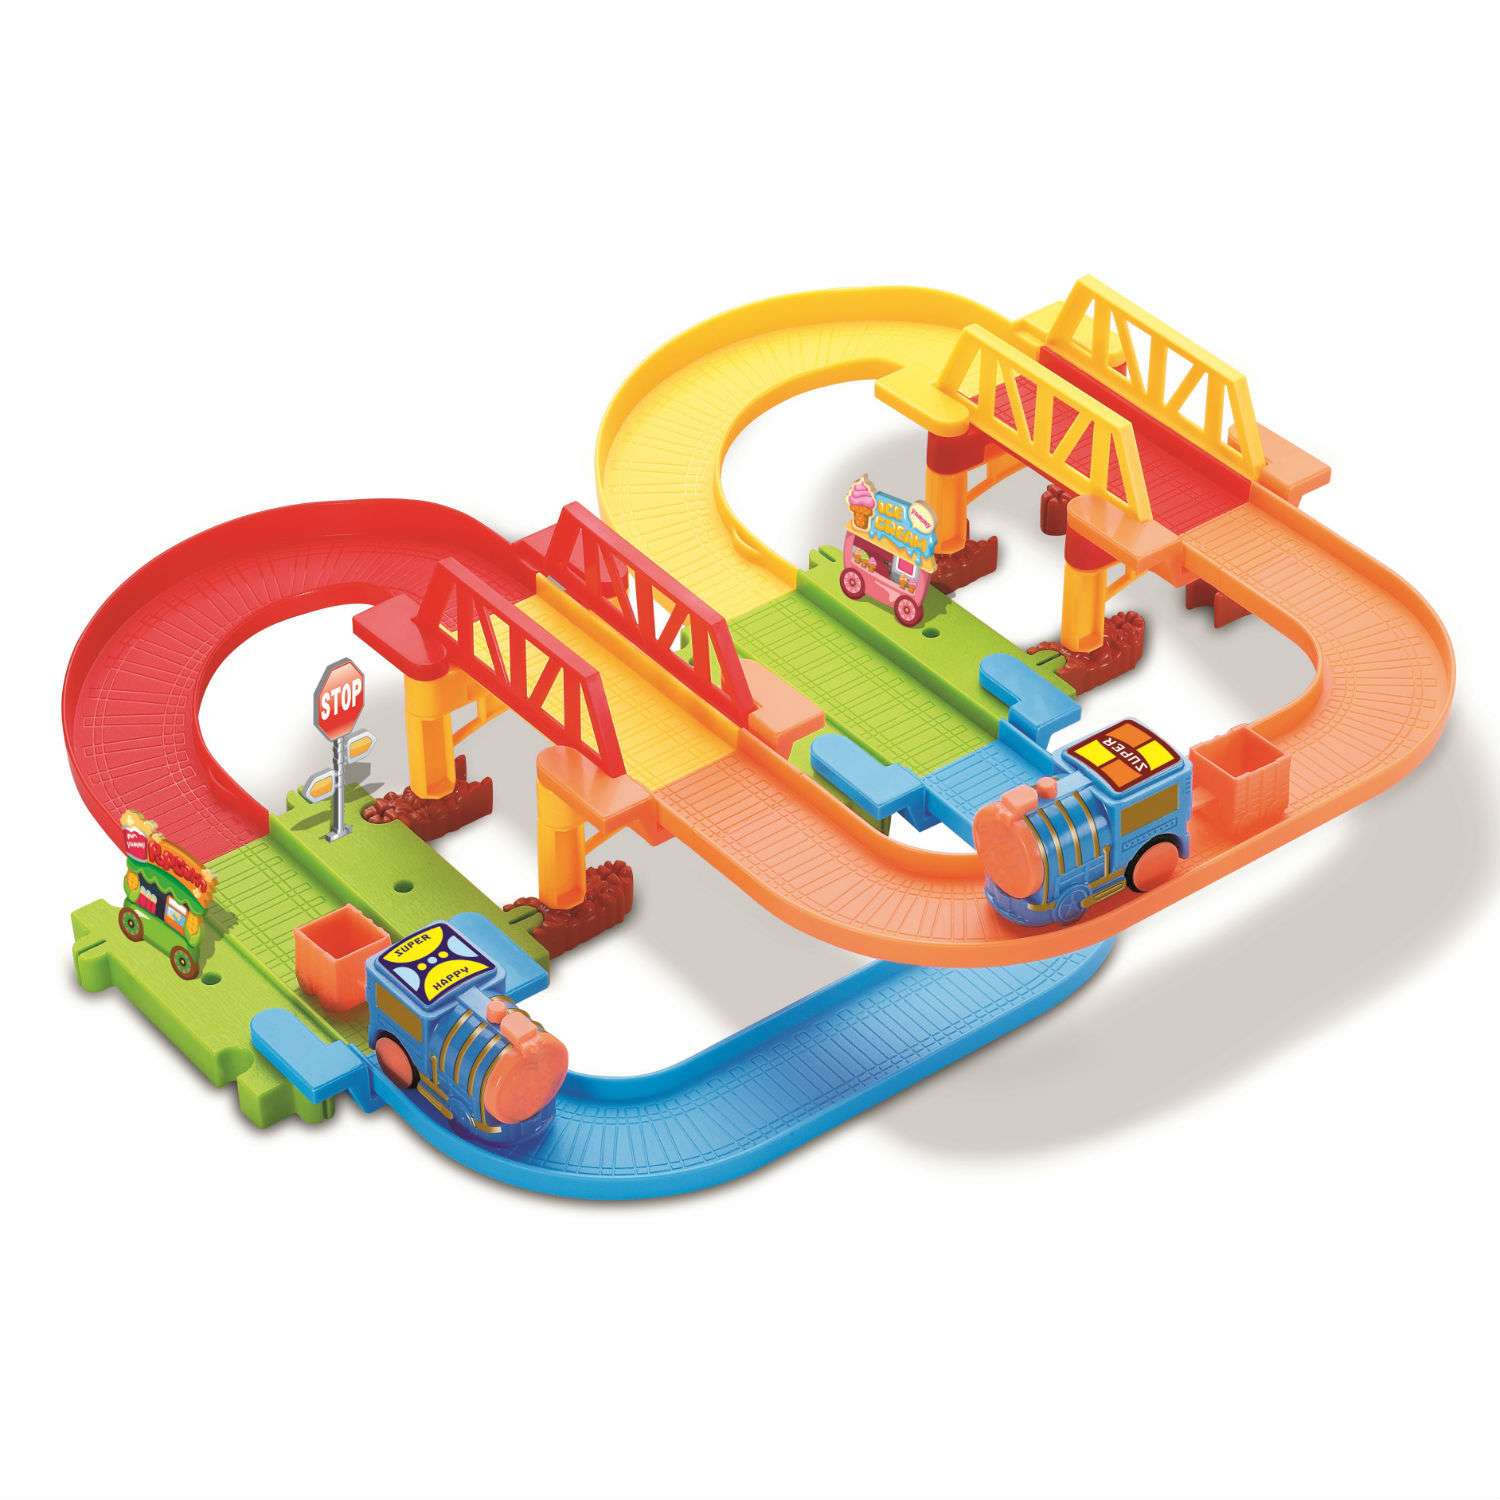 Железнодорожный набор Devik Toys поезд в комплекте 3110161 - фото 1